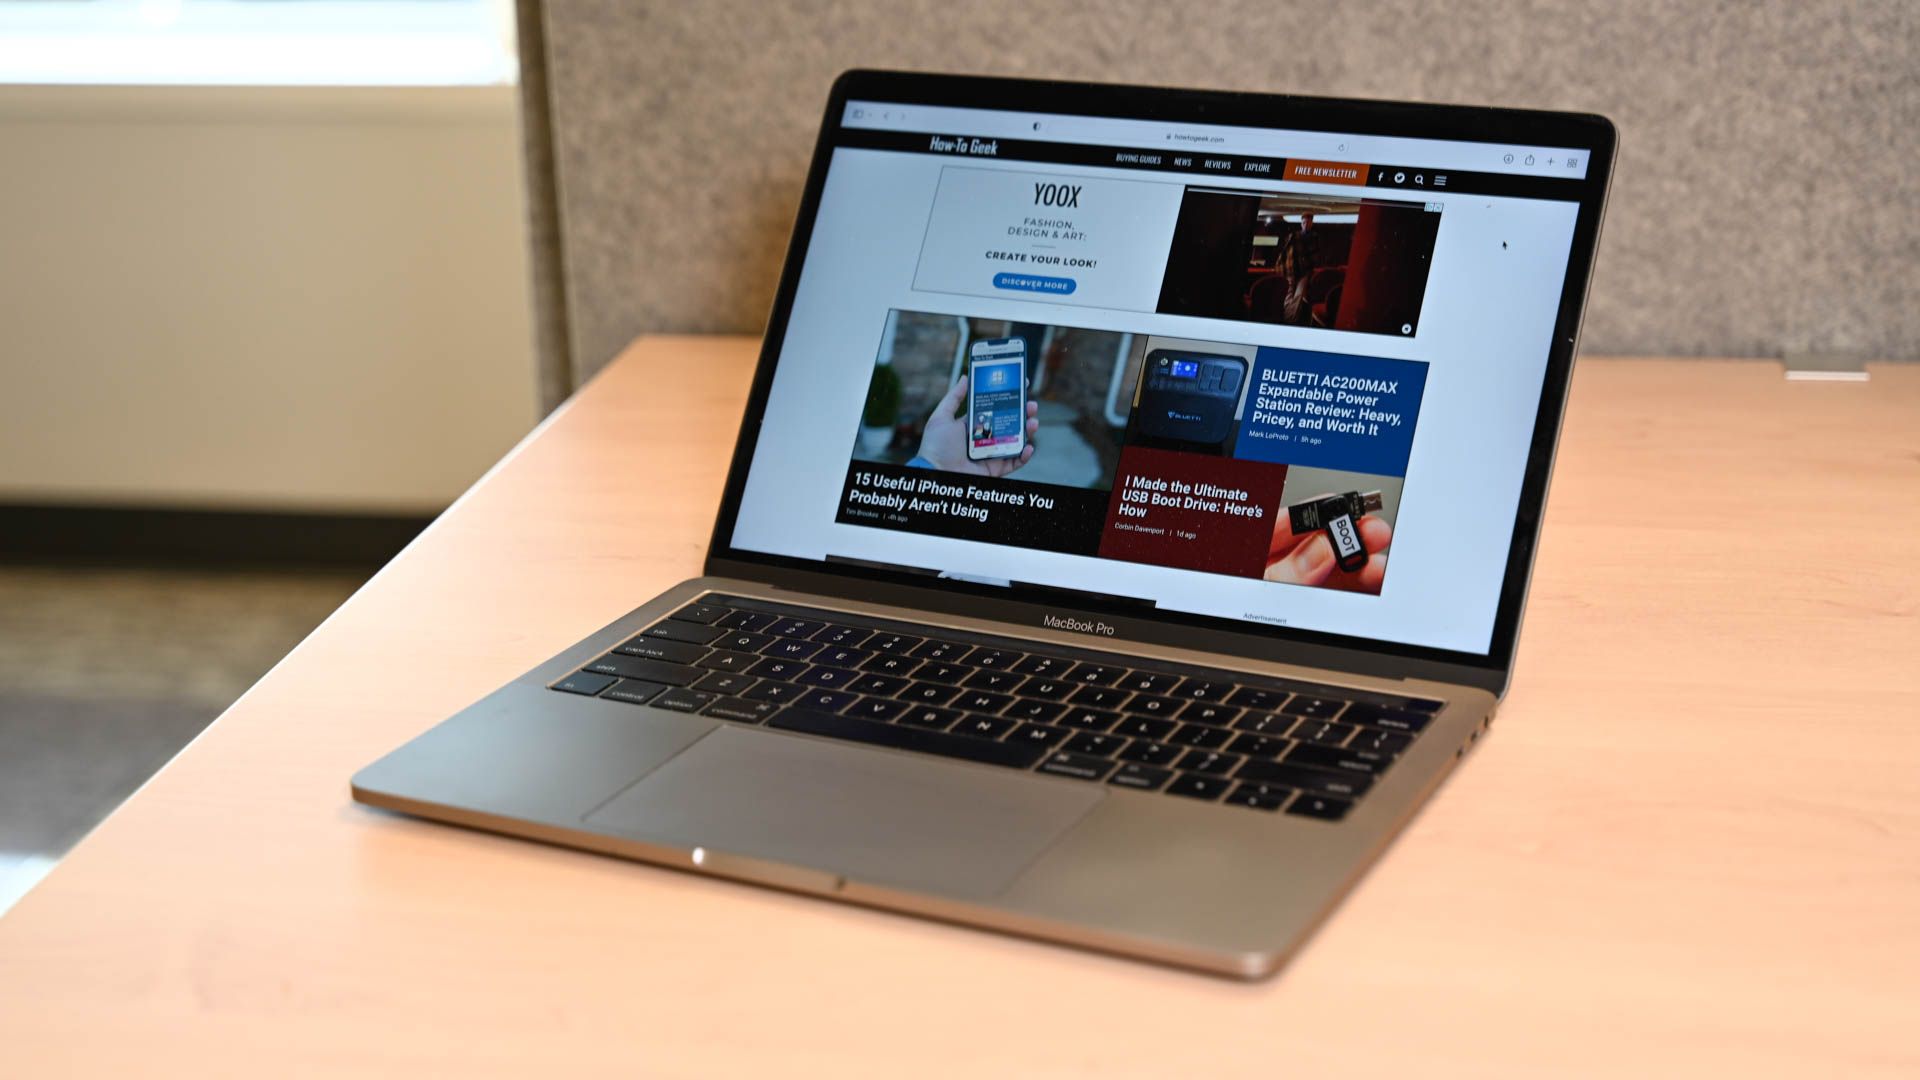 Macbook Pro with the How-To Geek website open.